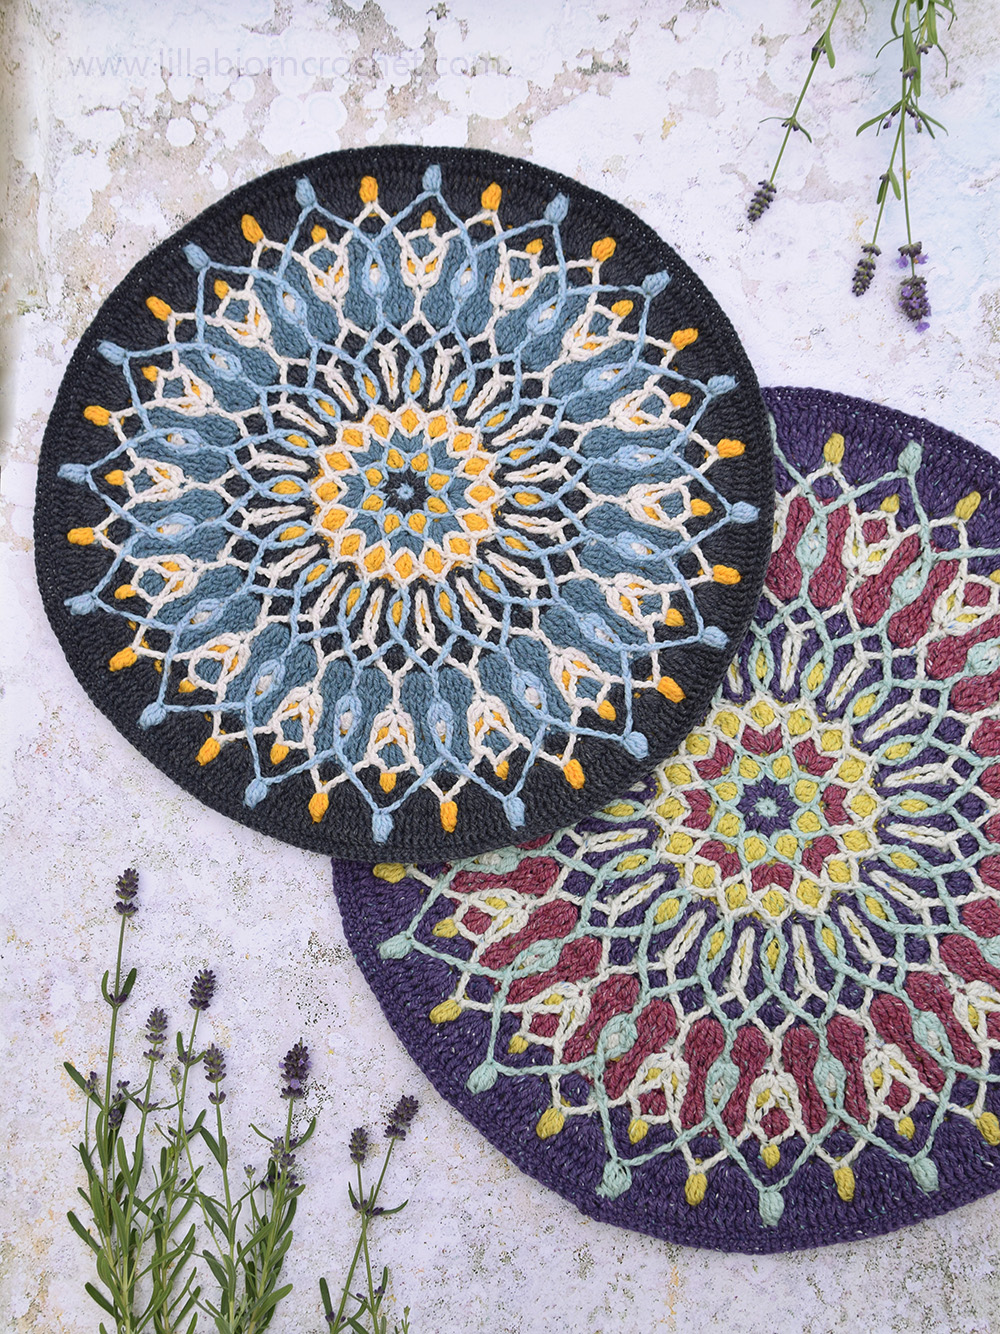 Mosaic Crochet Mandalas